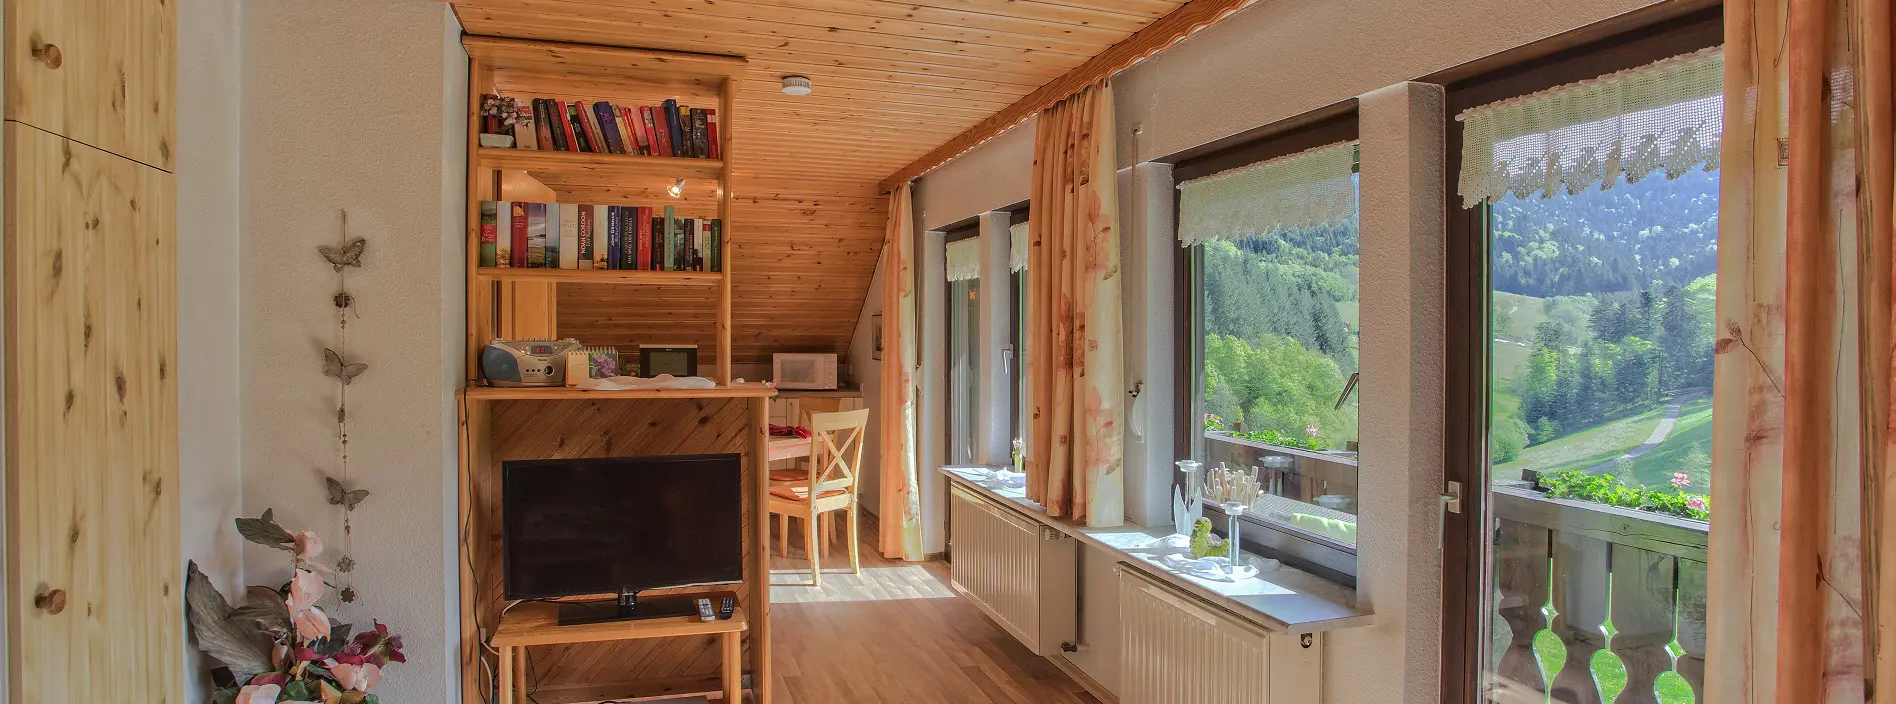 Wohnzimmer Ferienwohnung mit Waldblick